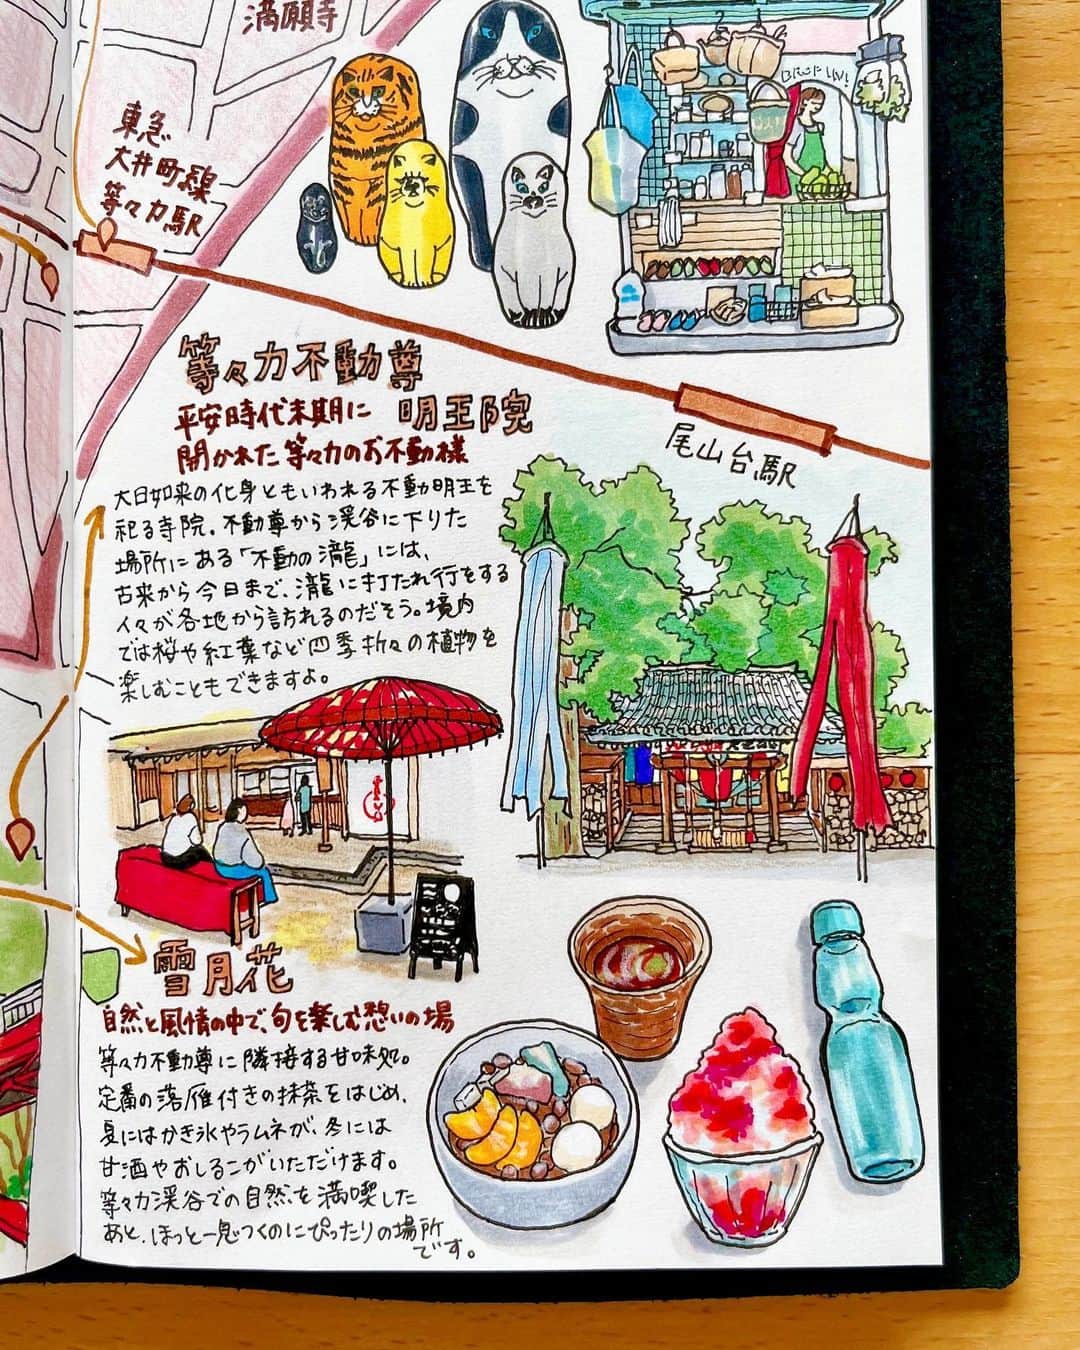 chintai_lifeさんのインスタグラム写真 - (chintai_lifeInstagram)「#住んだら手帳 第113弾は『#パワースポットがある街』 #等々力 ✨他の街はこちら👉@sundara_techo ⁡ 等々力は東京23区内でありながら、自然豊かで落ち着いた雰囲気の街。 ⁡ 駅から少し歩けば「等々力渓谷」に行くことができ、春には桜、夏には新緑など四季折々の自然を身近に感じることができます🌳 ⁡ 緑に囲まれてリフレッシュしたい、日々のお散歩を楽しみたいという人にはぴったりの街ですよ！ ⁡ ちなみに「等々力」の地名は、等々力不動尊から渓谷に下りた場所にある「不動の瀧」が「轟いた」音にちなんでつけられた、という言い伝えがあるのだそう。 ⁡ 駅を挟んで南北に広がる「等々力商店街」には、畳屋さんをリノベーションしたケーキ屋さん「Mountain Hut」や、老舗のクリーニング屋さんなどがあり、地元の人々に親しまれています🍰 ⁡ 商店街を中心に、「七夕プレゼントラリー」やプロミュージシャンによるパフォーマンスが行われる「おどろきとどろき祭り」など、季節にまつわる地域のイベントも定期的に開催されるので、要チェック🎋✨ ⁡ コンビニの数は少ないものの、駅の近くにはドラッグストアや24時まで営業しているスーパー、100円ショップなどがあるので、生活用品を買うのには困りません。 ⁡ #等々力駅 には #東急 #大井町線 が通っており、渋谷駅まで20分、新宿駅まで36分ほどと都心へのアクセスがいいのも魅力✨ ⁡ 少し距離はありますが、駅から27分ほど歩けば自由が丘駅に、29分ほど歩けば二子玉川駅に行くことができるので、お散歩がてら足をのばしてみるのもいいですね♩ ⁡ __ ⁡ そんな等々力のランドマークは、 ⁡ 東京23区唯一の渓谷 #等々力渓谷 　　 武蔵野台地の南端を谷沢川が侵食してできた渓谷。ケヤキやコナラなどの樹木が一面に生い茂り、夏でもひんやりとした空気が流れます。都内とは思えない自然の中でお散歩を楽しんでみては？ ⁡ 🚃東急 大井町線/等々力駅より徒歩3分 __ ⁡ 👇等々力のおすすめスポットはこちら✨ ⁡ 平安時代末期に開かれた等々力のお不動様 #等々力不動尊 明王院 ⁡ 大日如来の化身ともいわれる不動明王を祀る寺院。不動尊から渓谷に下りた場所にある「不動の瀧」には、古来から今日まで瀧に打たれ行をする人々が各地から訪れるのだそう。境内では桜や紅葉など四季折々の植物を楽しむこともできますよ。 ⁡ 🚃東急 大井町線/等々力駅より徒歩8分 ⁡ 自然と風情の中で、旬を楽しむ憩いの場 #雪月花 🍵 ⁡ 素材の味を大切にした、手作り料理やデザートがいただけるカフェ。月替わりのランチプレートは、地元・田無をはじめ長野県、茨城県の食材を使った人気メニュー。コーヒーは豆本来の味わいを引き出すため、焙煎前後に2度のハンドピックを行っているのだそう。こだわりの味をぜひ、味わってみてください。 ⁡ 🚃東急 大井町線/等々力駅より徒歩7分 ⁡ 季節のフルーツを使ったケーキが魅力の洋菓子店 Mountain Hut 🍰 　　 旬のフルーツをふんだんに使用した色とりどりのスイーツと、淹れたてのハンドドリップコーヒーがいただけるお店。おすすめは、「レモンケーキ」。レモンピールの酸味と香り、ホワイトチョコレートの甘味が絶妙でお土産にもぴったりです。 ⁡ 🚃東急 大井町線/等々力駅より徒歩3分 ⁡ 雑誌「Hanako」がプロデュースする駅ナカ売店 Hanako Stand Todoroki 📚 　　 “毎日に、ちょっとよい未来の選択を”というコンセプトを掲げており、ロスフラワーを使ったブーケや、洗剤を使わず水だけで汚れを落とせるブラシなどサステナブルなアイテムが集まります。駅のホームにあるので、電車を待つちょっとした時間や通勤・通学の途中など、日常的に立ち寄れる場所です。 ⁡ 🚃東急 大井町線/等々力駅ホーム内 __ ⁡ illustrations by おふみ(@ofumi_3) ⁡ 本企画では、あの街に「住んだら？」をテーマに手書きのイラストマップを手帳に一発書きして紹介していきます📖✨実際にMAPに登場するお店や街を訪れたら、 #住んだら手帳 をつけて写真を投稿してね📷！ ⁡ ※新型コロナウイルスの感染拡大防止のため、営業時間の変更・休業の可能性があります。お出かけの際は公式サイト等でご確認ください ⁡ #travelersnotebook #midoritravelersnotebook #トラベラーズノート #MountainHut #Hanako」7月4日 17時27分 - sundara_techo